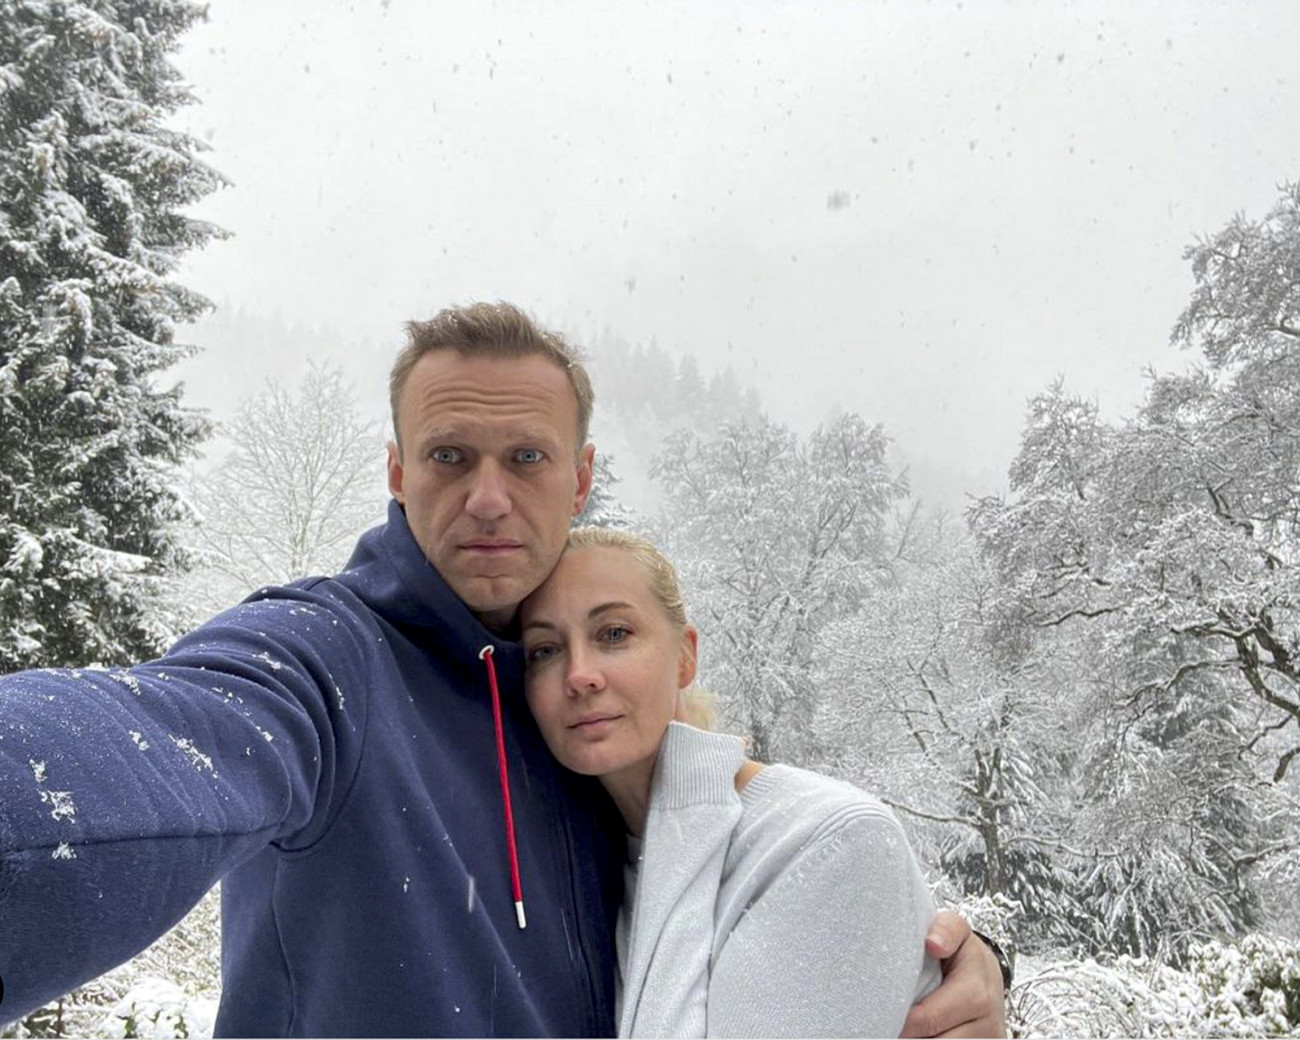 -, 2021. január 17.
Alekszej Navalnij orosz ellenzéki politikus által készített szelfin átöleli feleségét, Juliát Németországban 2021. január 16-án. Navalnij tervei szerint január 17-én visszatér hazájába, noha az orosz Szövetségi Büntetés-végrehajtási Szolgálat (FSZIN) korábban közölte, hogy Navalnij ellen körözés van érvényben, ezért lépéseket kívánnak tenni a politikus őrizetbe vétele érdekében.
MTI/AP/Alekszej Navalnij/Alekszej Navalnij